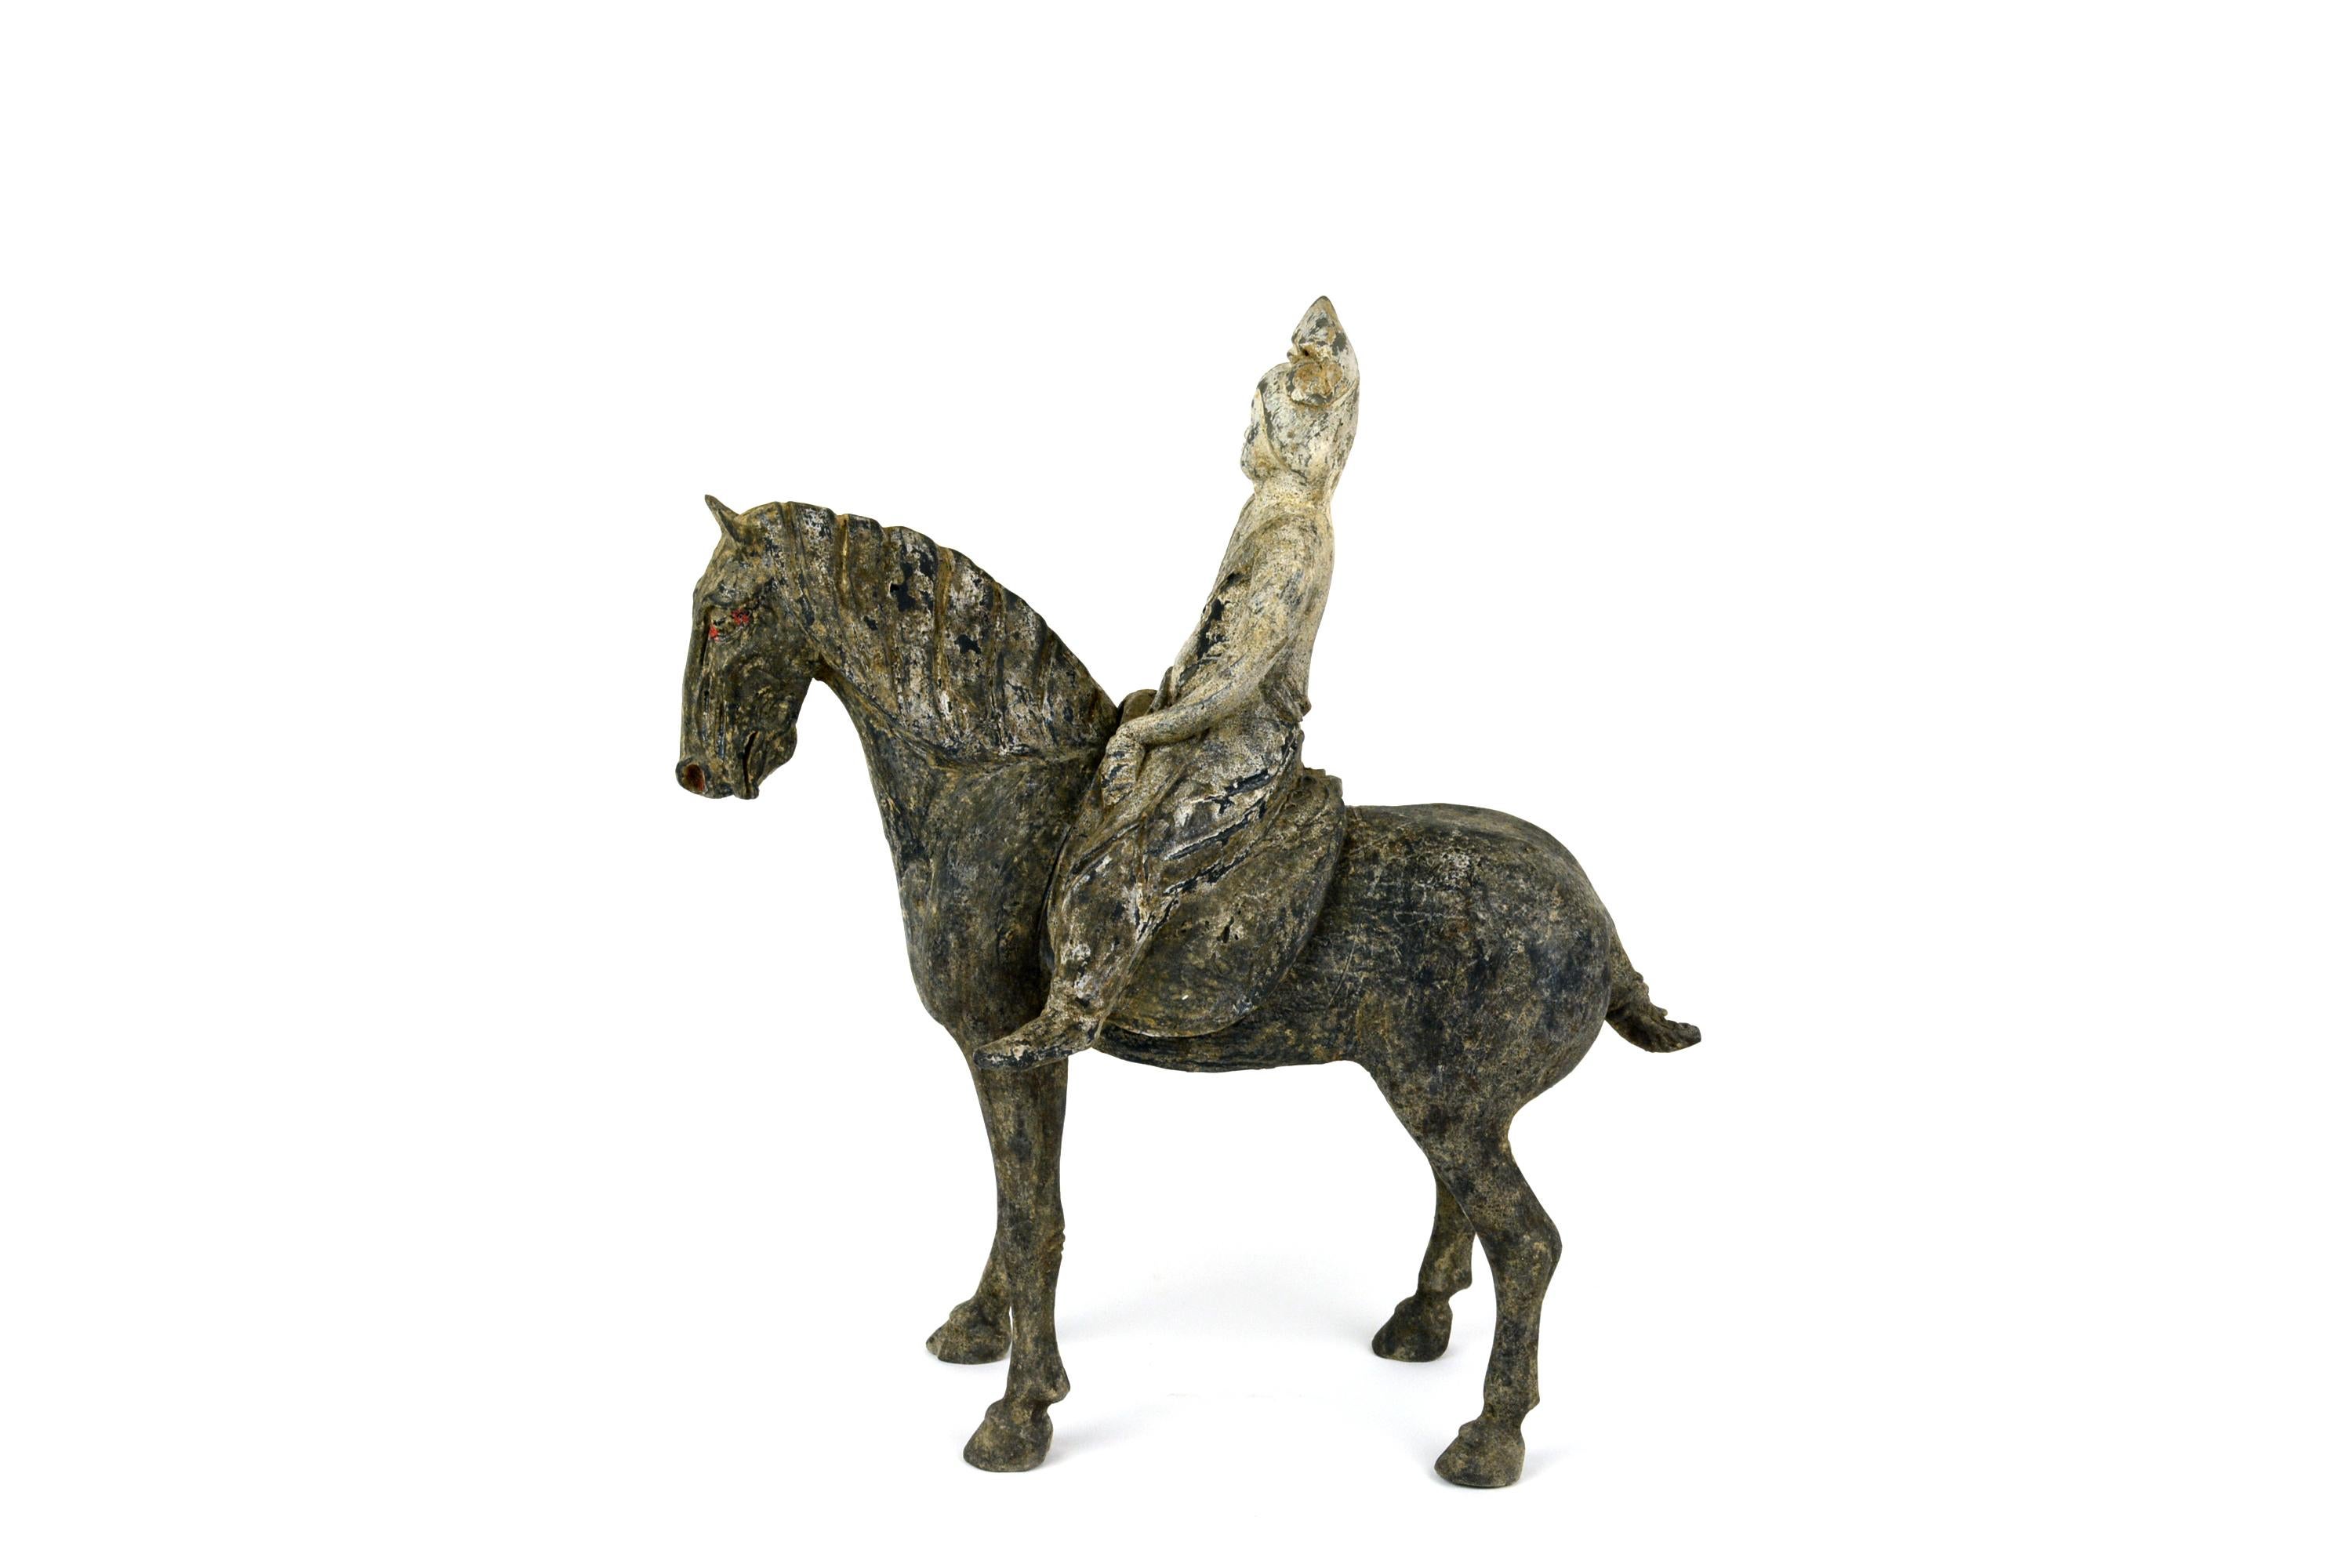 Tang Equestrian mit abnehmbarem Reiter	12h
Die frühe unglasierte Tang-Keramik zeichnet sich durch ihren Realismus und die elegante Form des Pferdes aus.  Dieses Pferd hat eine abnehmbare Reiterin. Die abgebildete Reiterin ist eine adlige Dame in